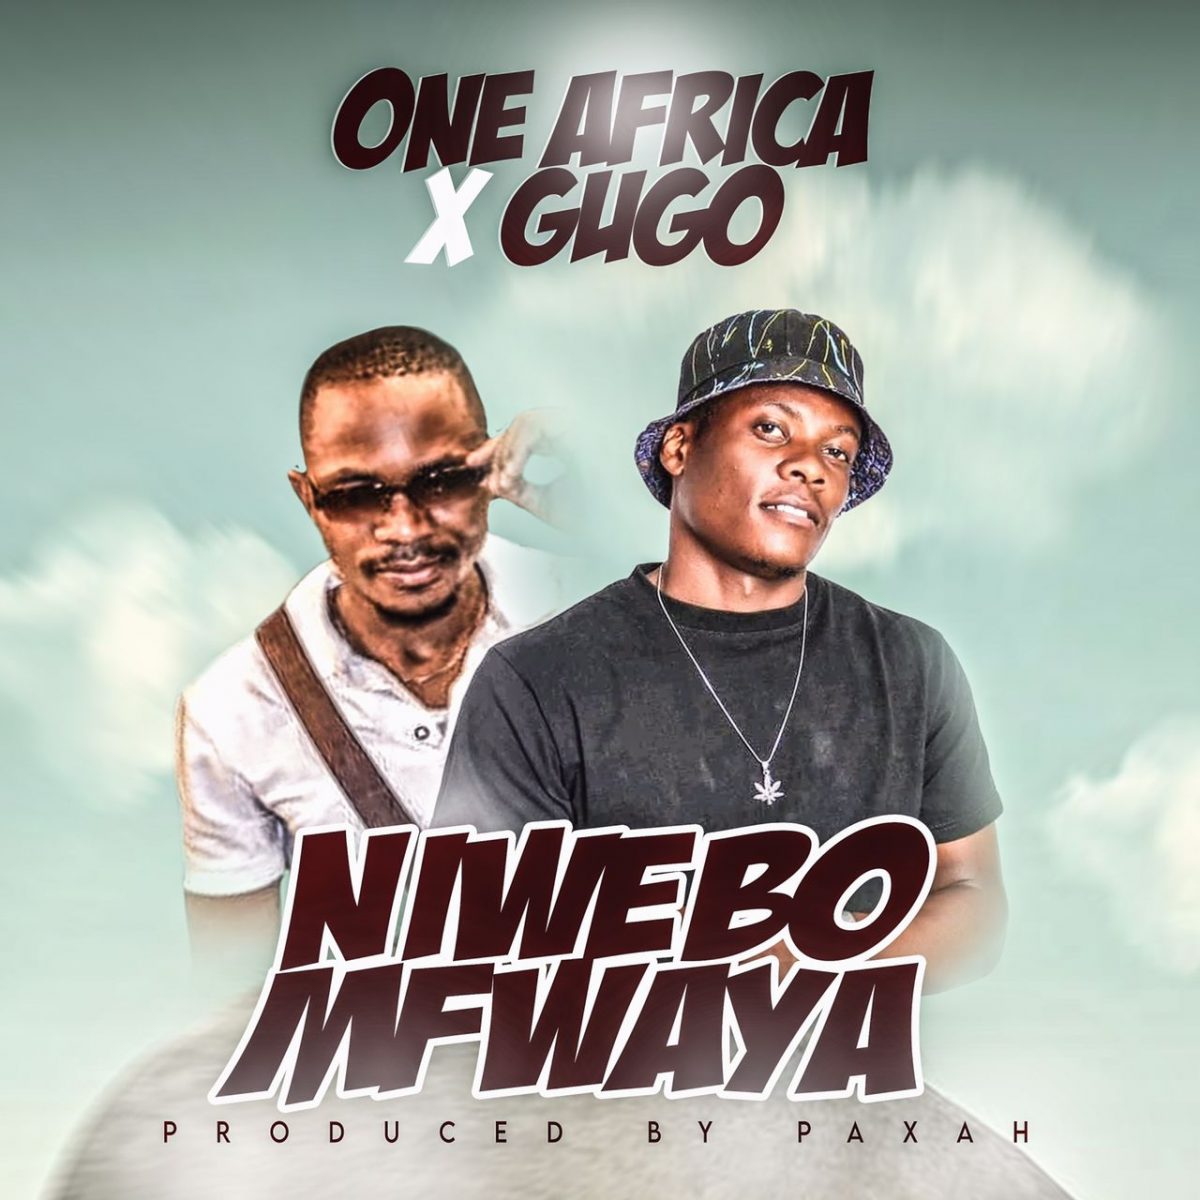 One Africa & Gugo - Niwebo Mfwaya